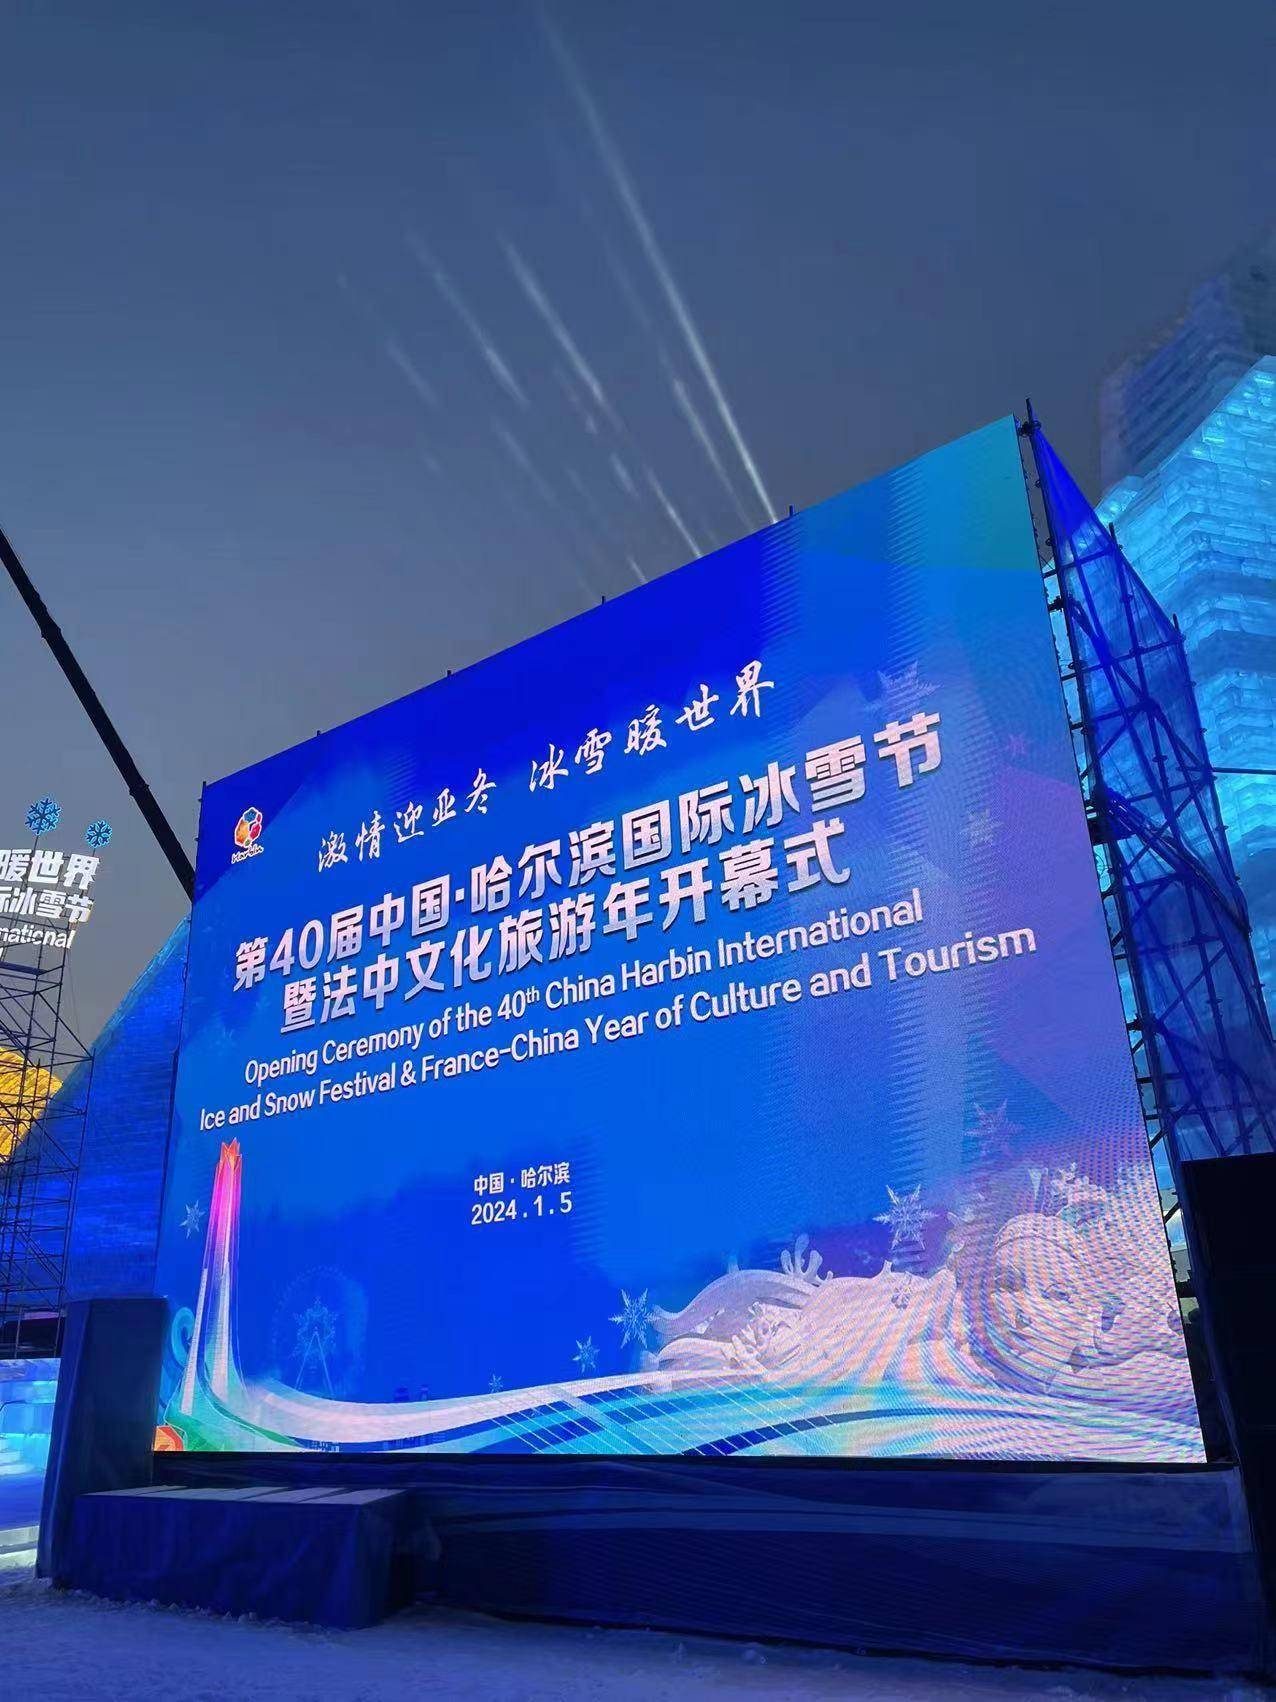 1月5日,第40届中国·哈尔滨国际冰雪节暨法中文化旅游年开幕式在冰雪